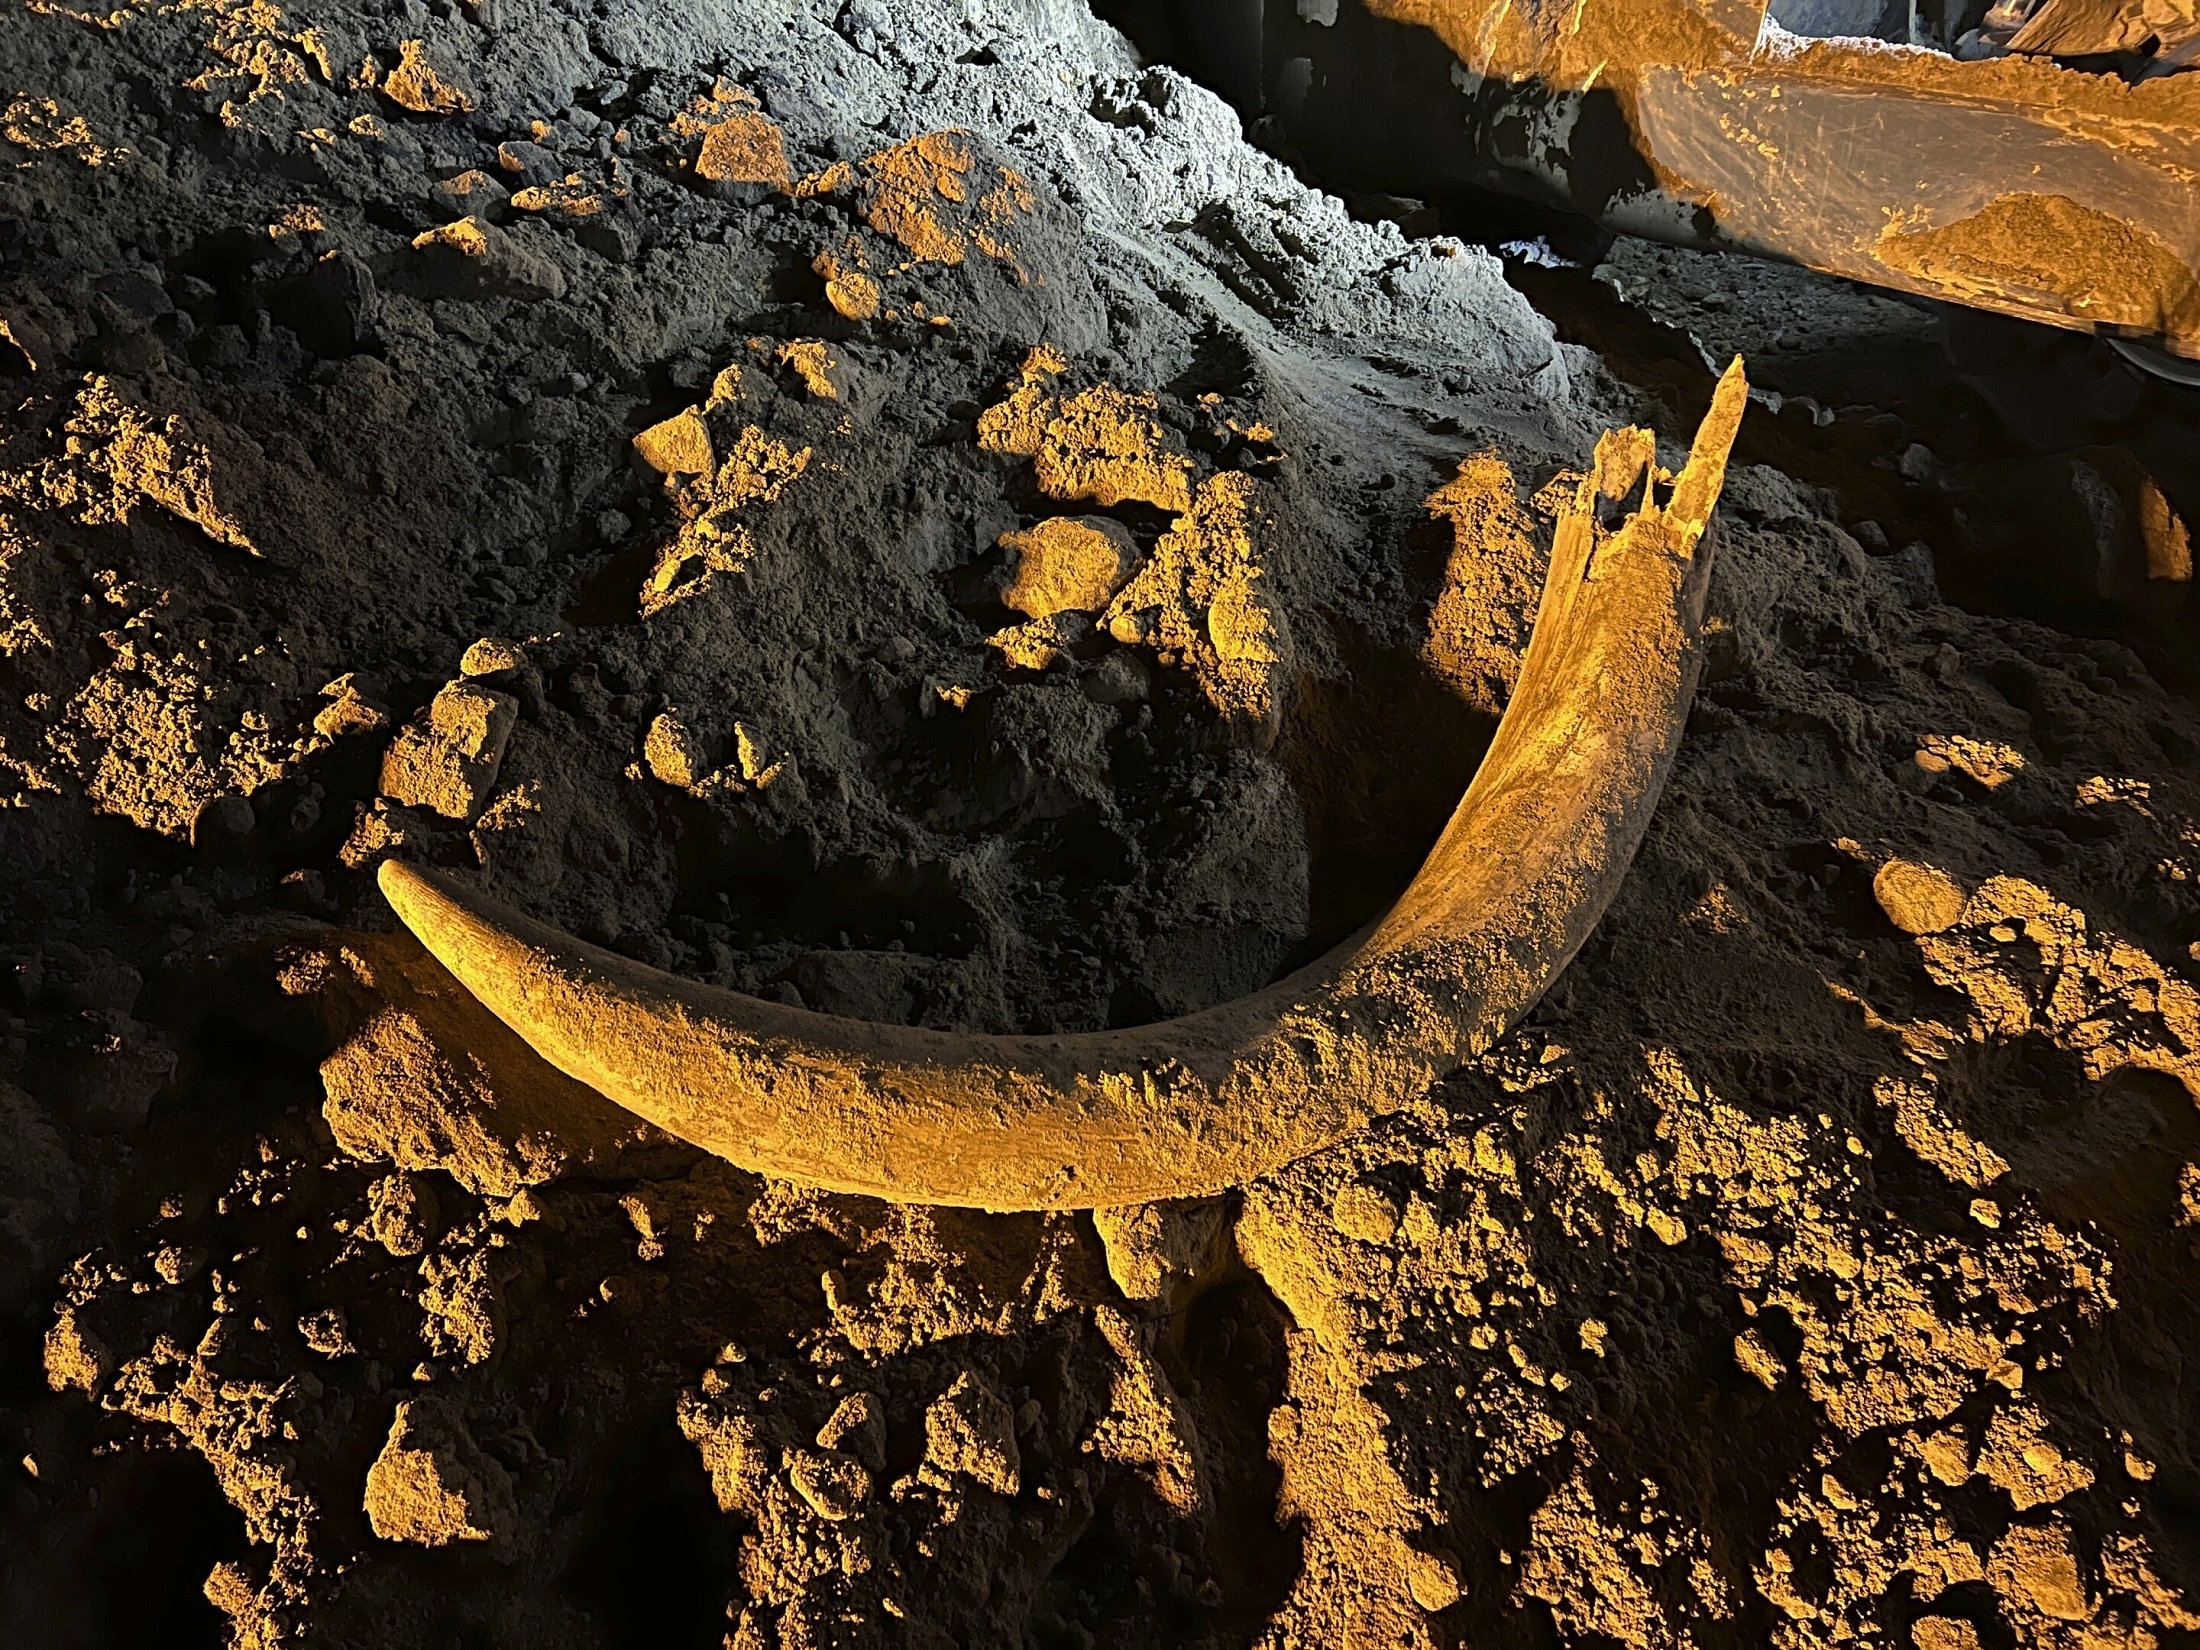 Na ovoj slici koju je ustupio Coleman Fredricks, rudari ugljena otkrili su kljovu mamuta u svibnju 2023. u rudniku Freedom blizu Beulah, Sjeverna Dakota. Velika grabilica električnog bagera izvadila je kljovu iz zemlje i spustila je u kamion, koji je kasnije istovario teret, otkrivajući kljovu. Geološko istraživanje Sjeverne Dakote potom je posjetilo rudnik i iskopalo više kostiju na mjestu, pronašavši više od 20 mamutovih kostiju, koje su sada omotane plastikom za njihovu zaštitu dok paleontolozi rade na njihovoj konzervaciji. Zasluge: Coleman Fredricks preko AP.